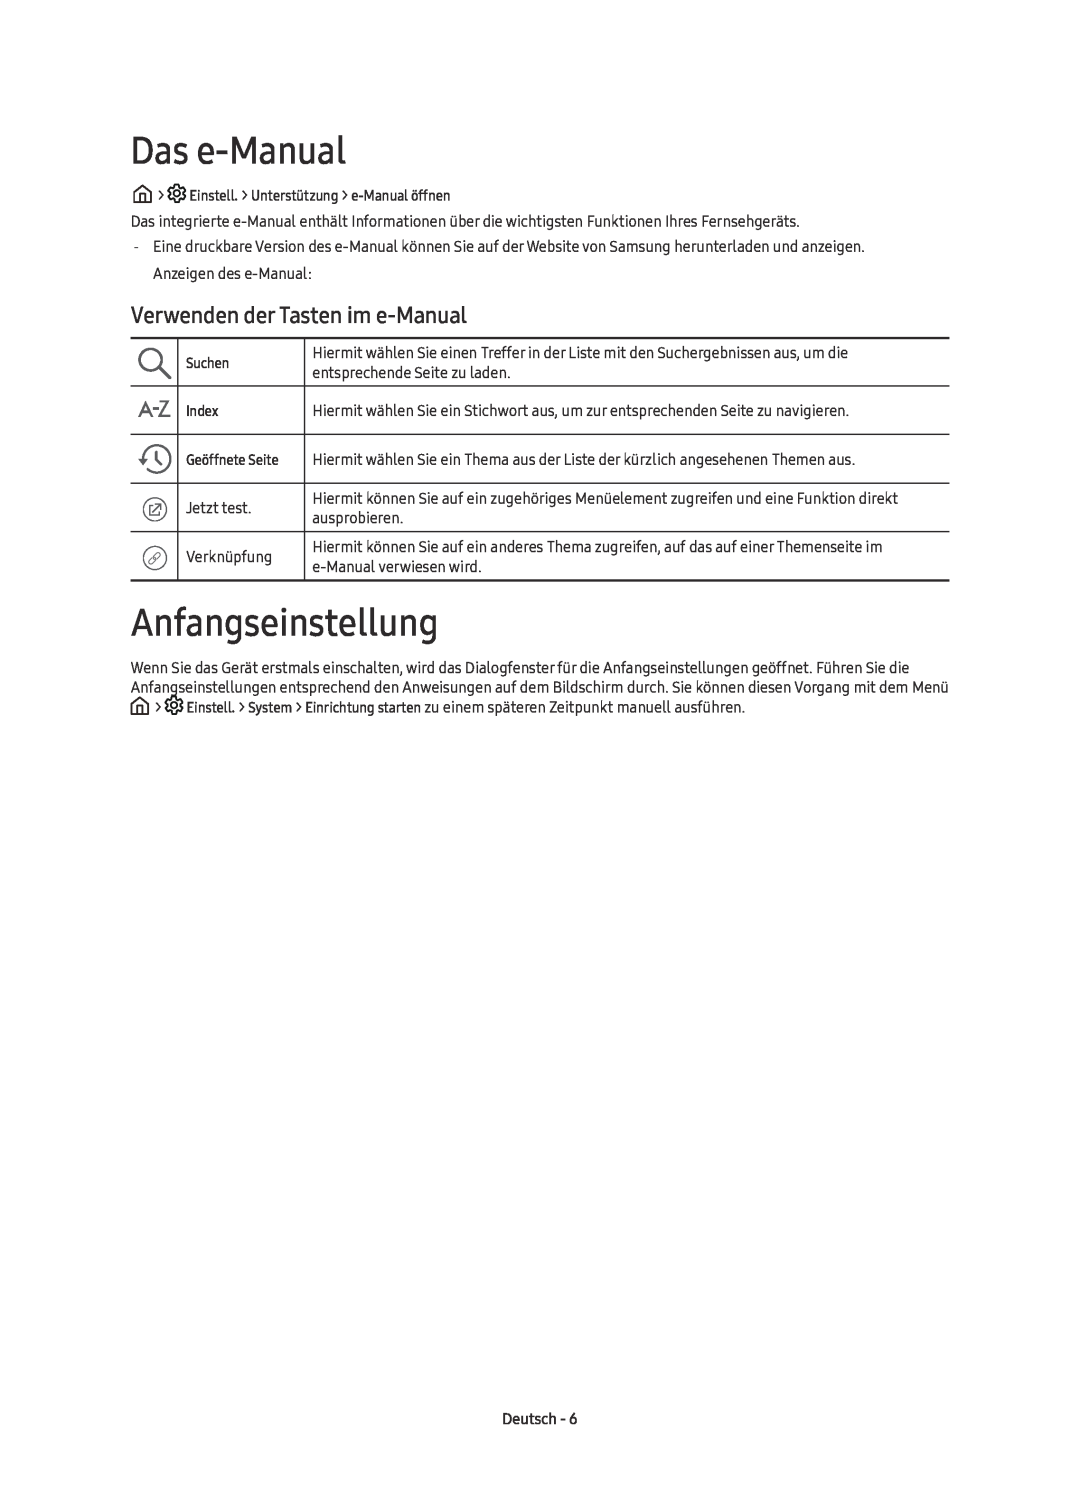 Samsung UE60KU6070UXZG, UE55KU6079UXZG manual Das e-Manual, Anfangseinstellung, Verwenden der Tasten im e-Manual, Deutsch 